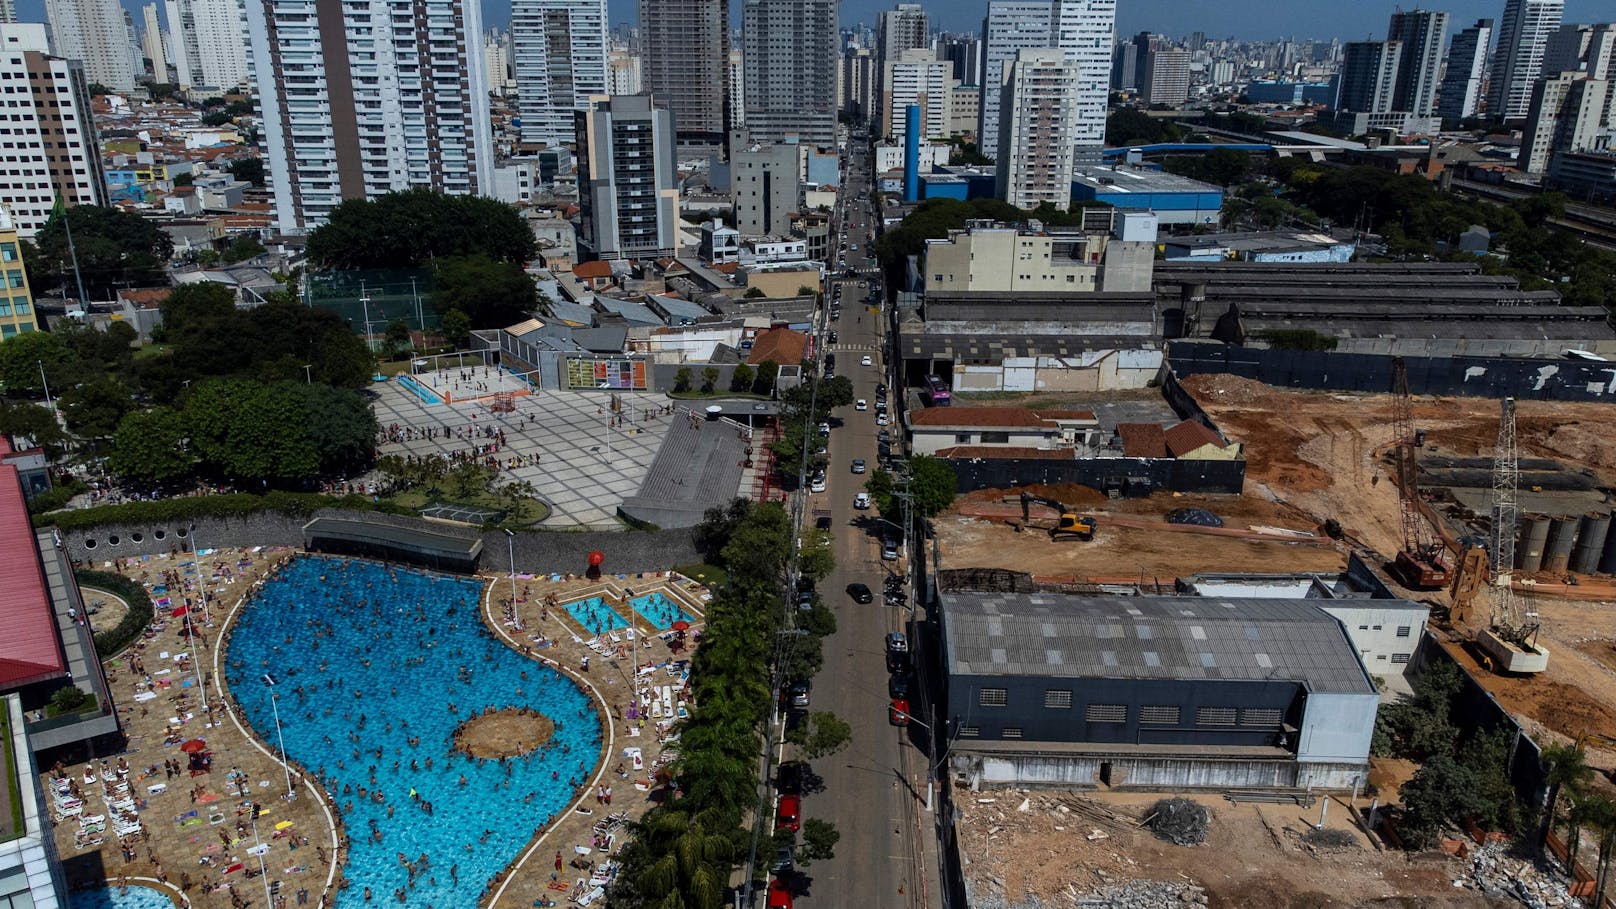 Gefühlte Temperatur in Brasilien bei über 62 Grad